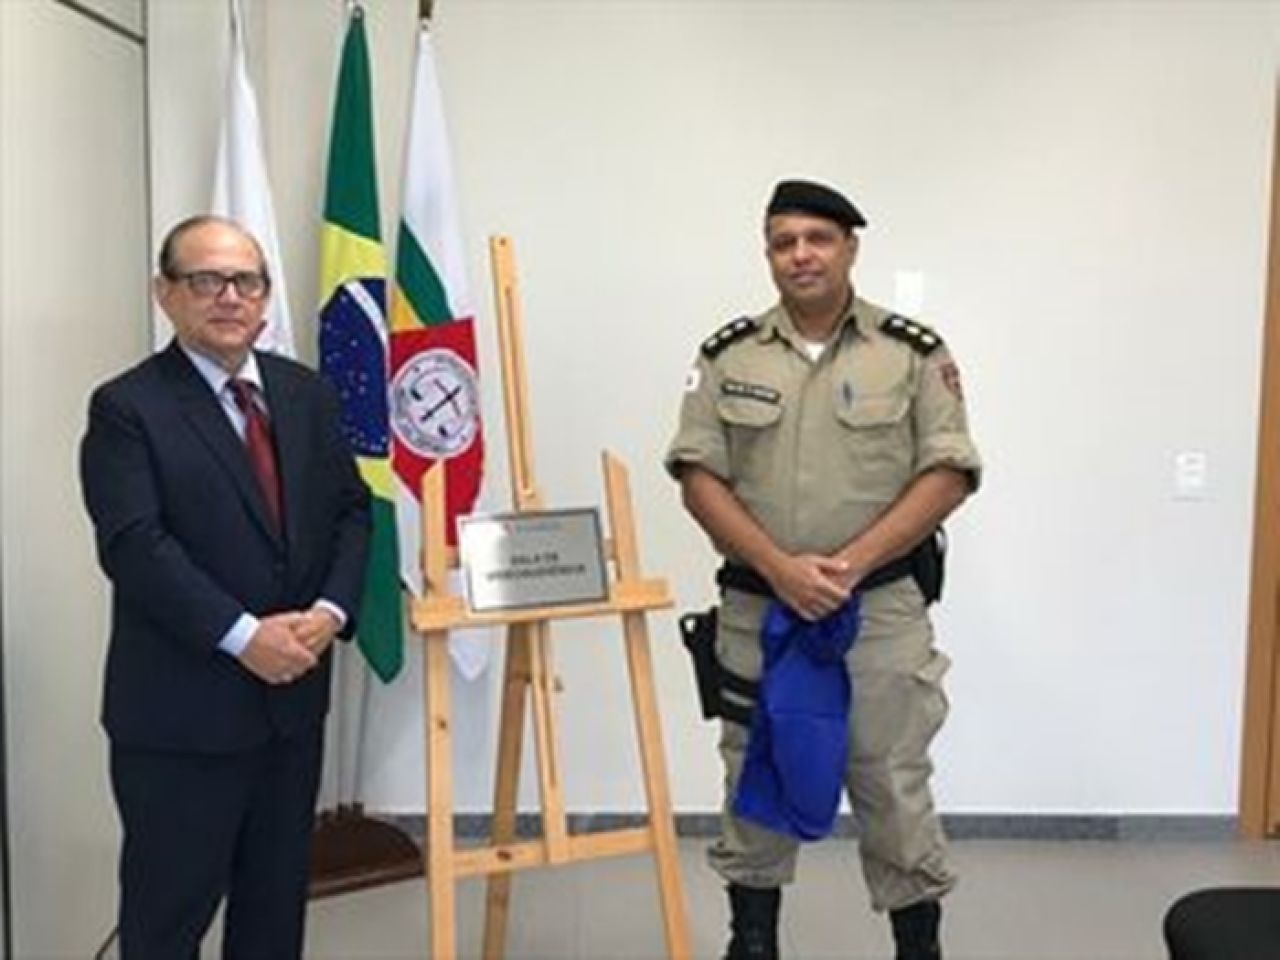 Polícia Militar inaugura sala da Justiça Militar no Fórum de Patos de Minas